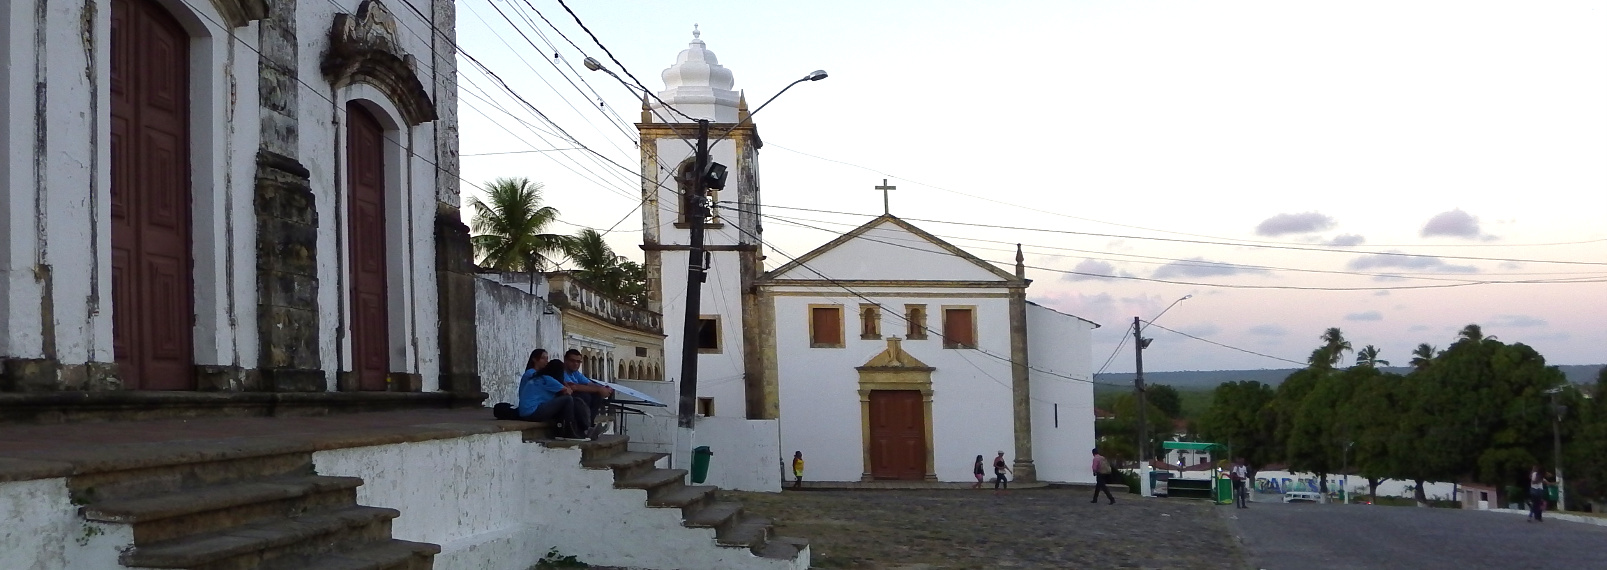 Convento Sto. Antonio - Igarassu  ist einer der ältesten Orte Brasiliens und liegt etwa 50 Km nördlich von Recife